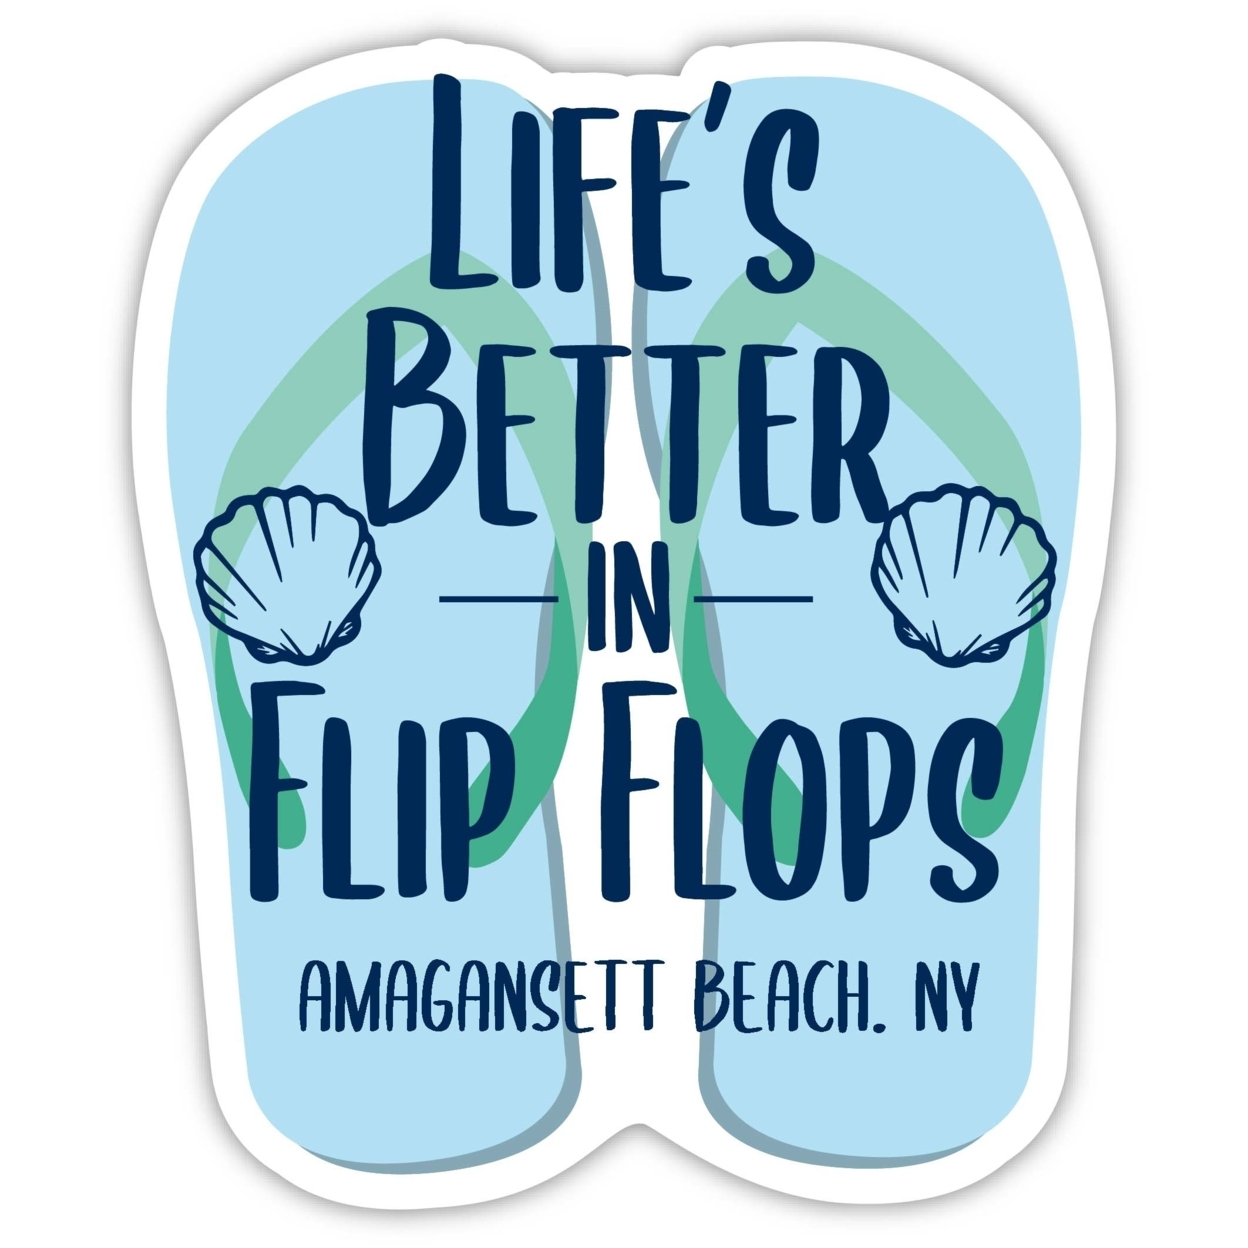 Amagansett Beach New York Souvenir 4 Inch Vinyl Decal Sticker Flip Flop Design